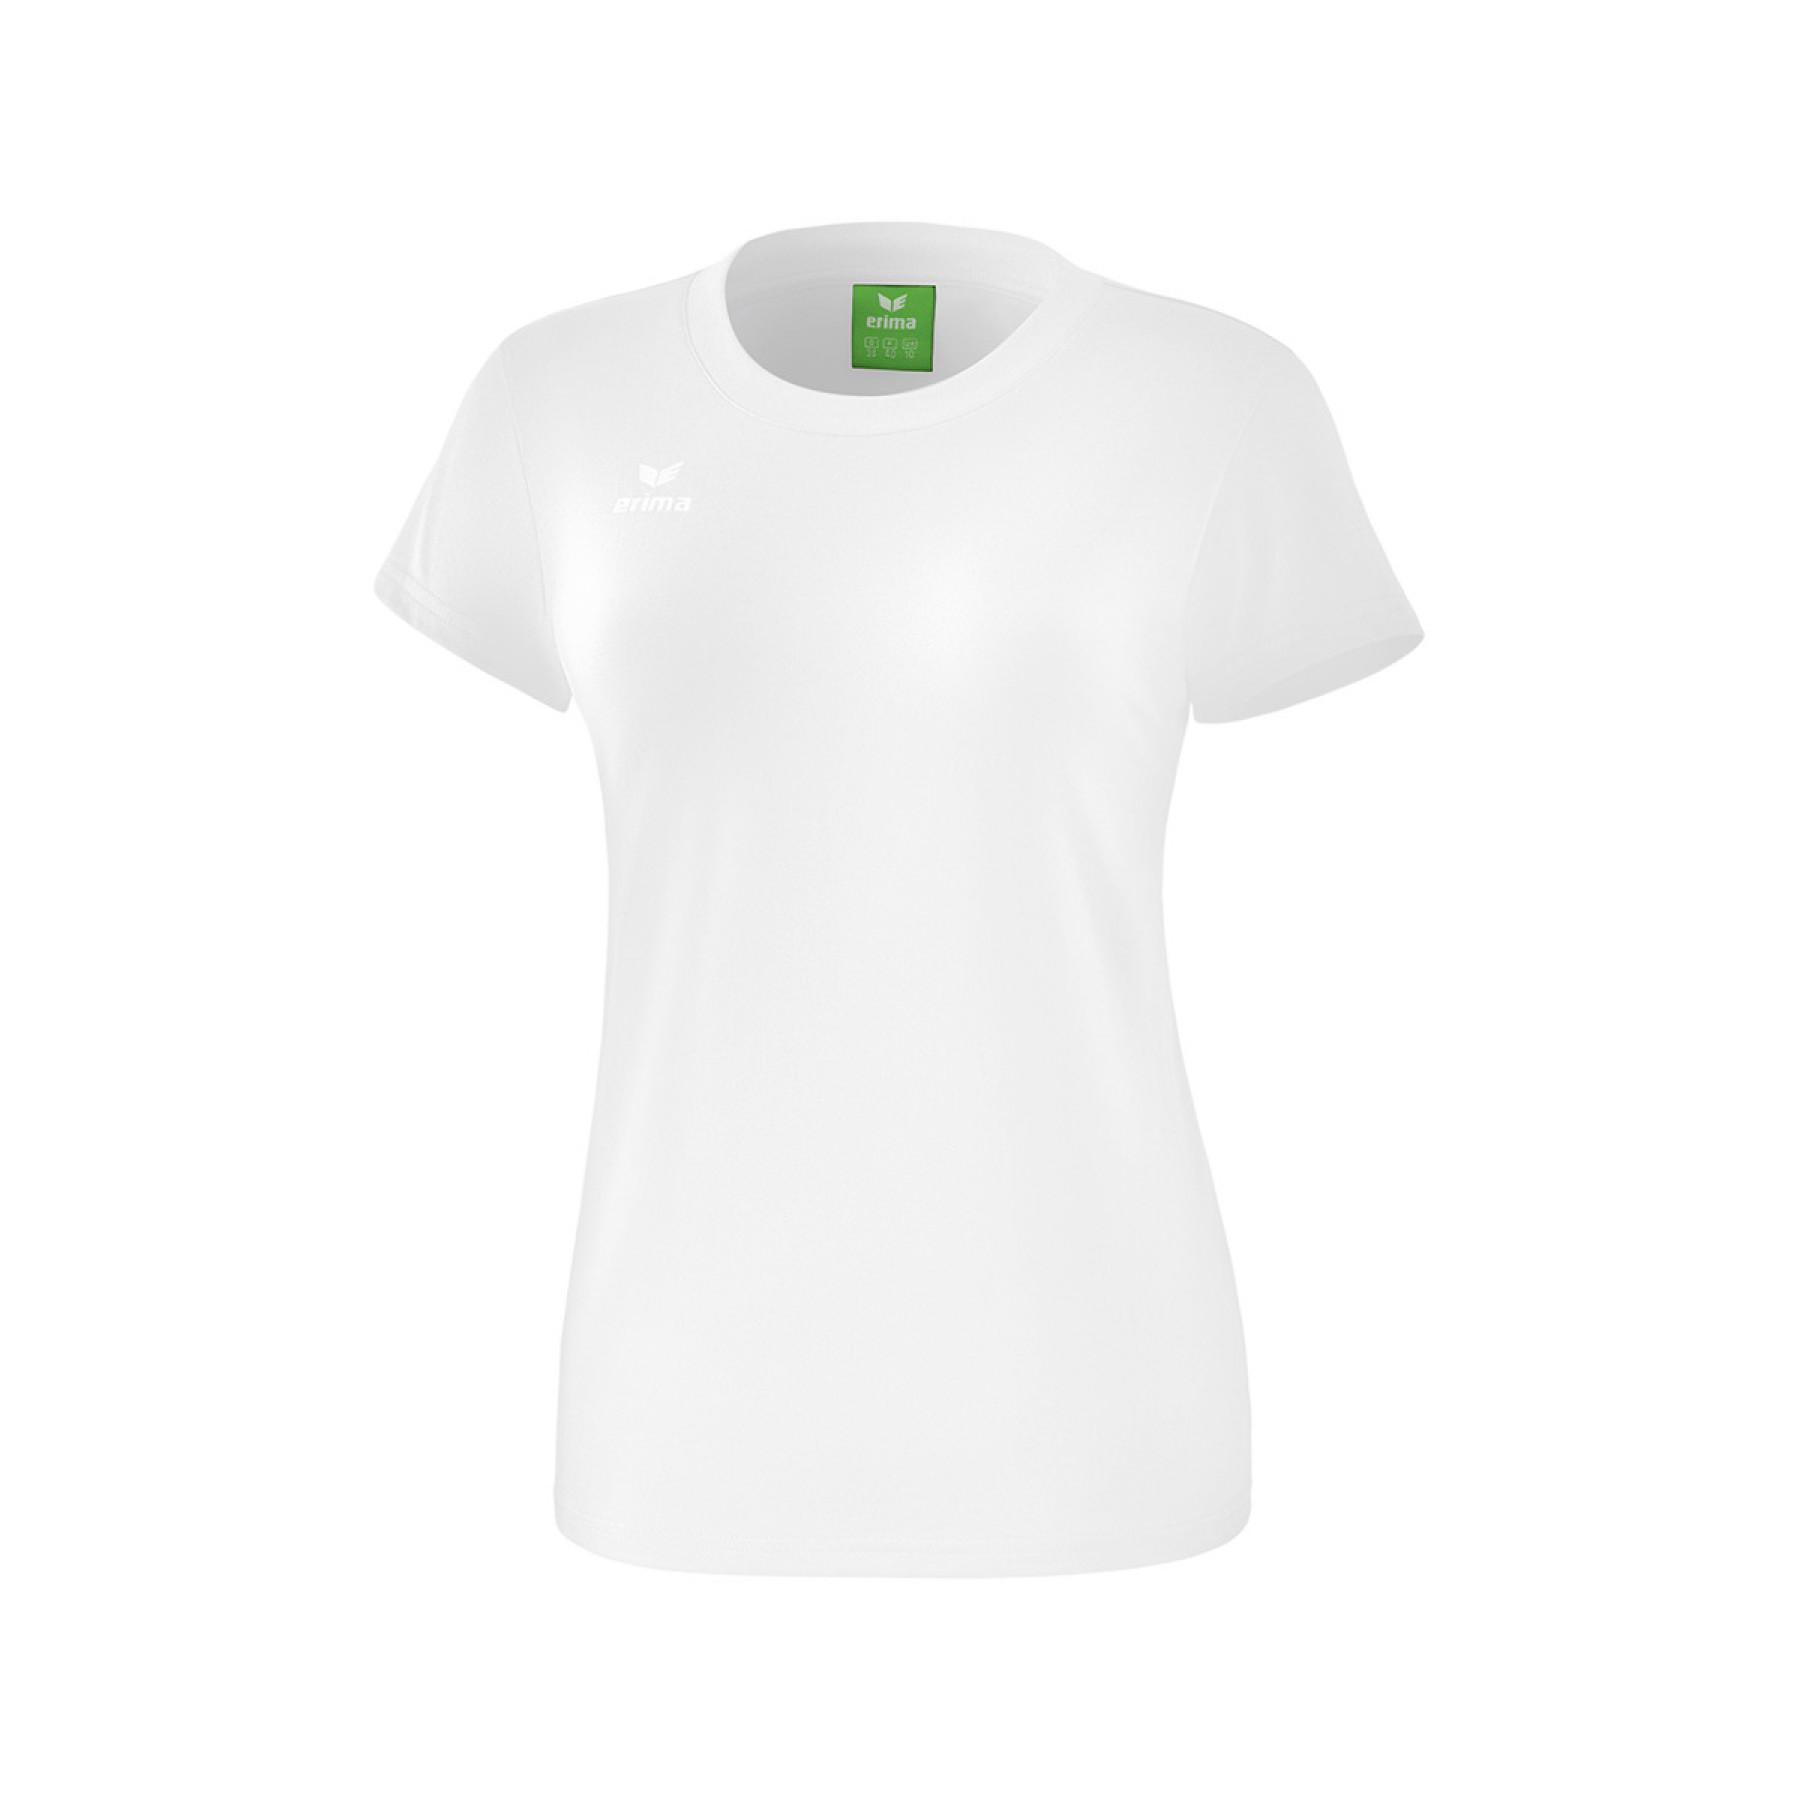 Frauen-T-Shirt Erima style